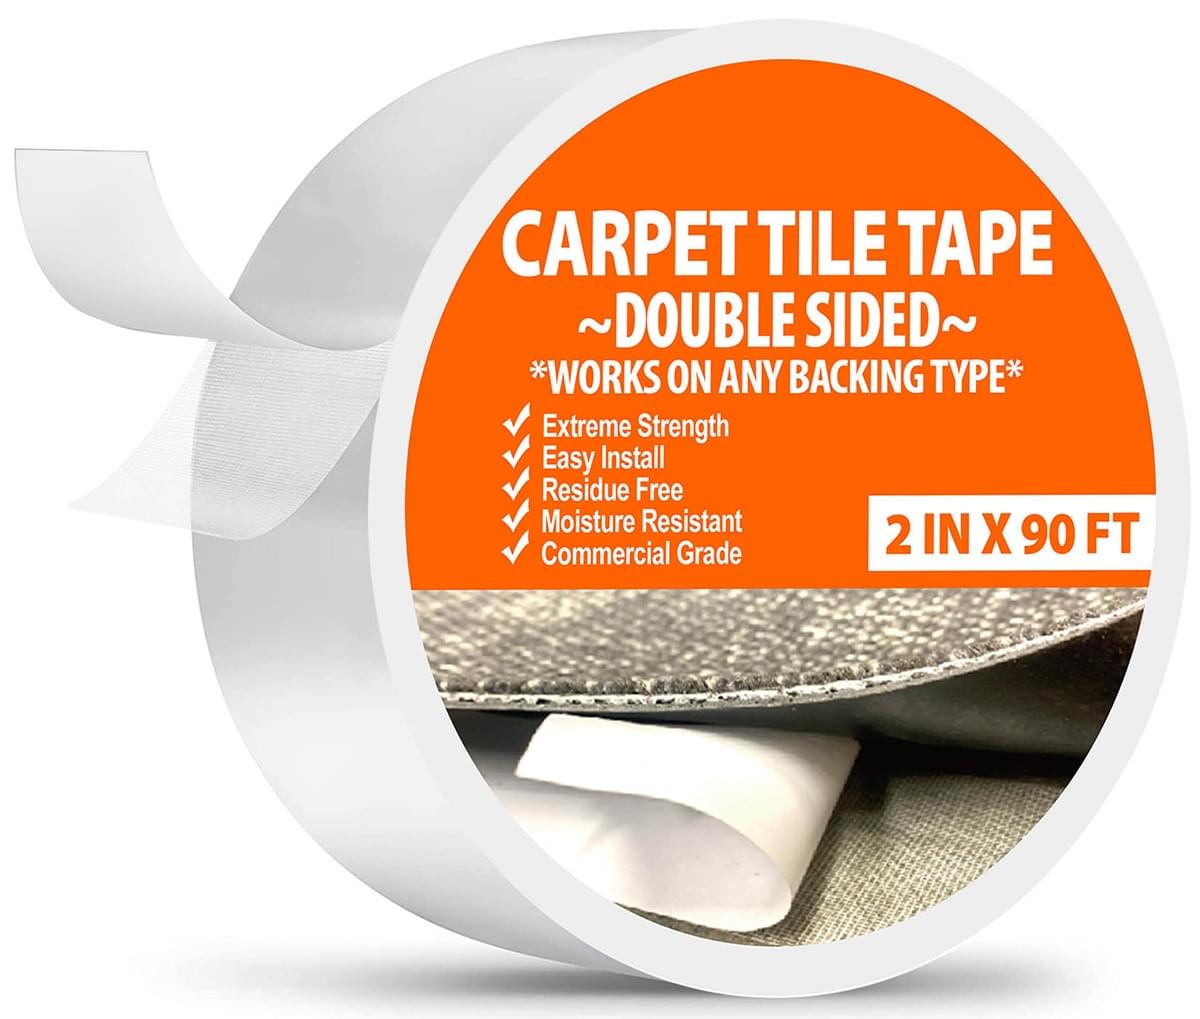 double sided carpet tape heavy duty commercial grade flooring tape carpe tile tape all flooring now